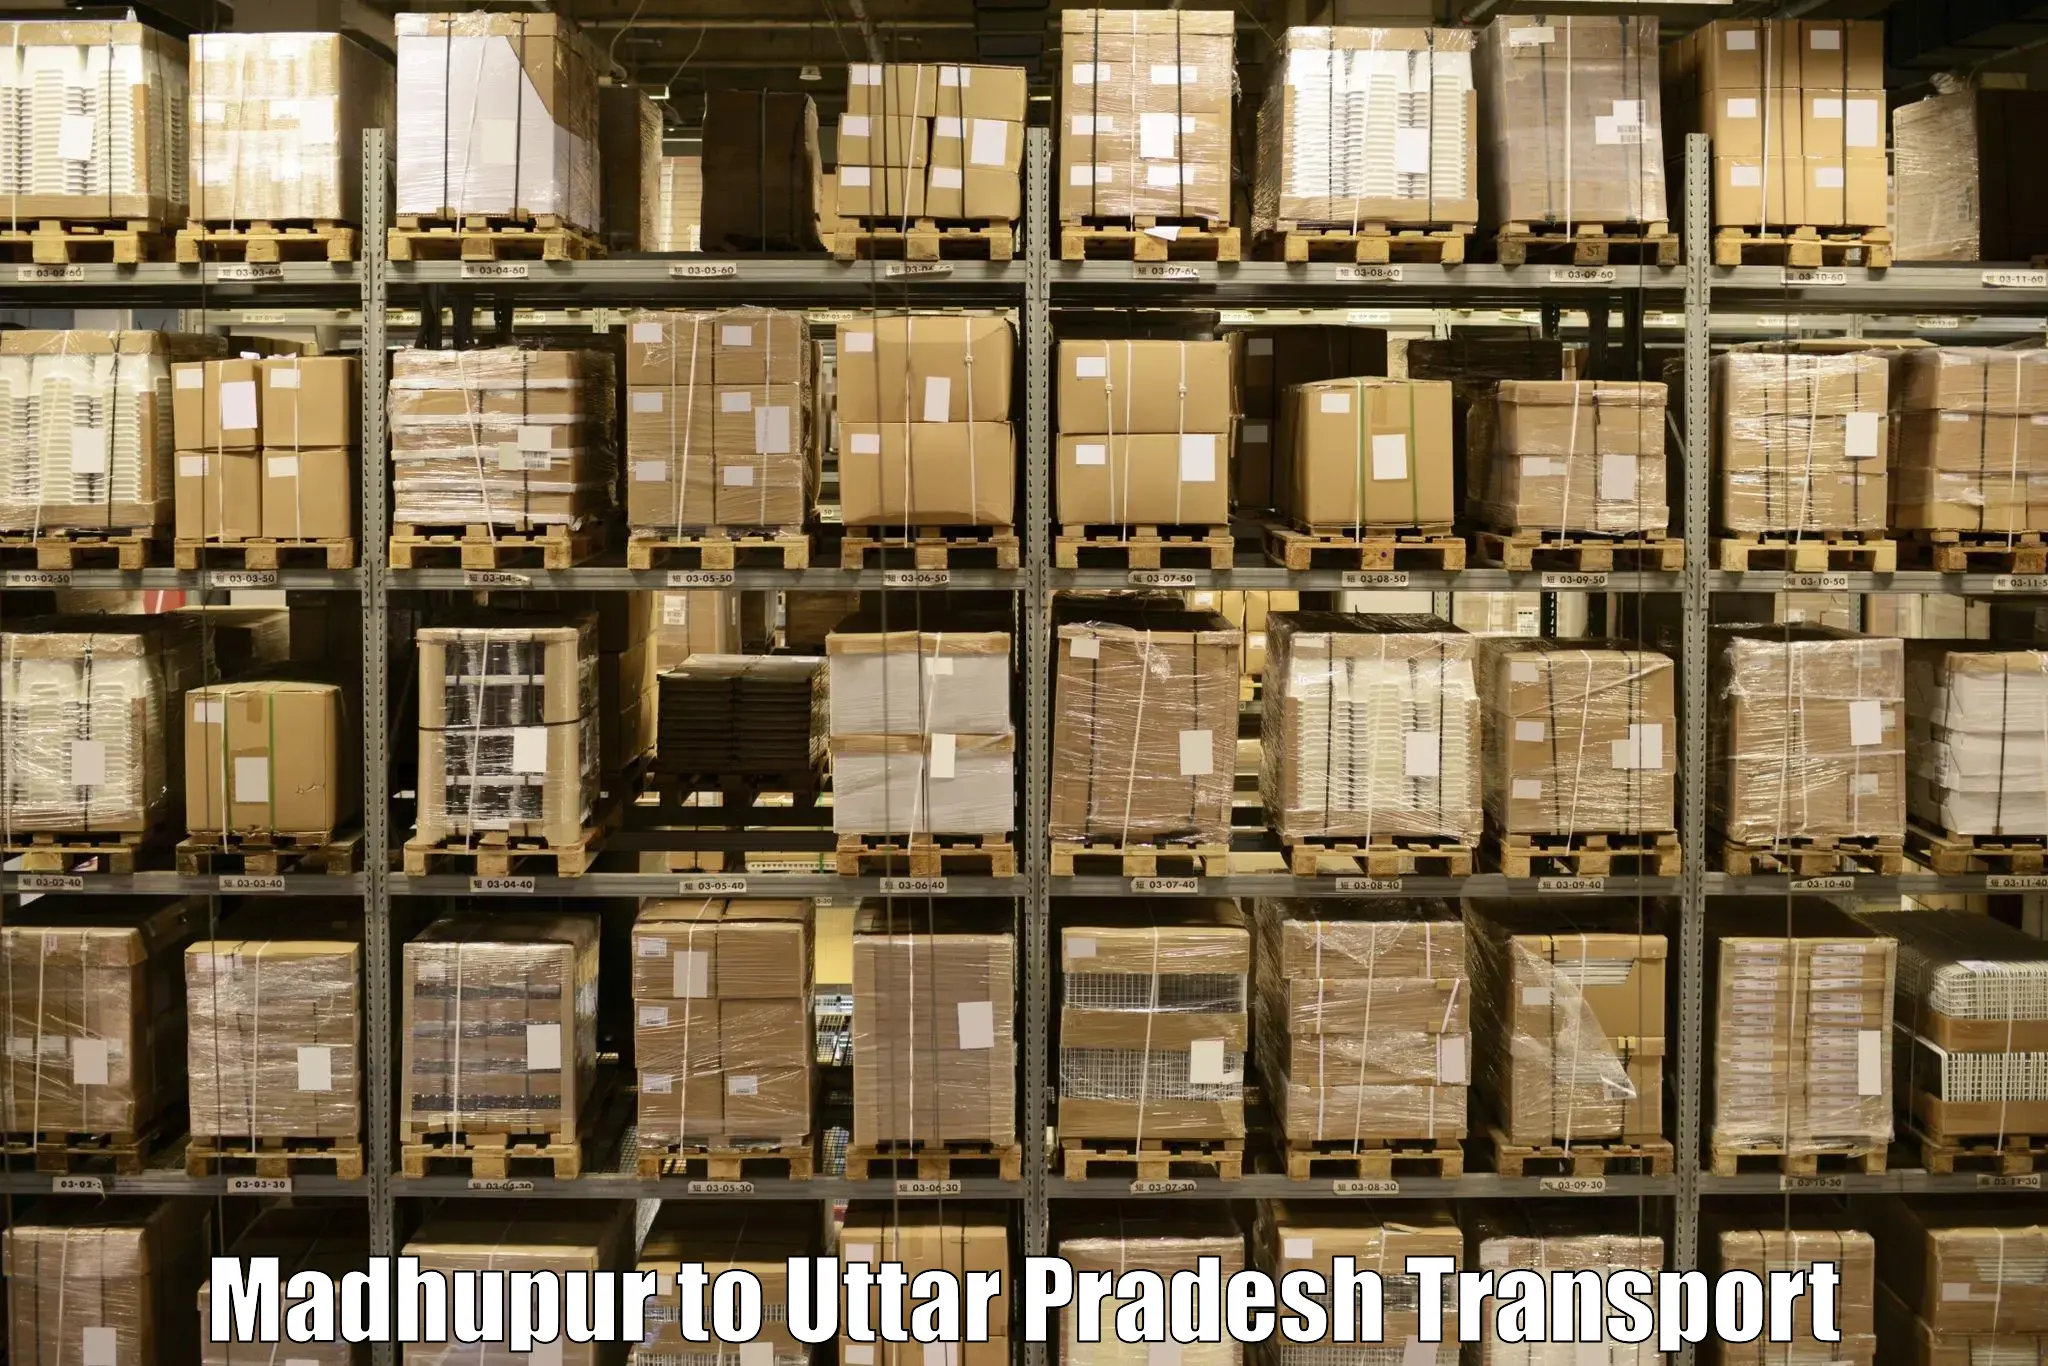 Daily transport service Madhupur to Cholapur